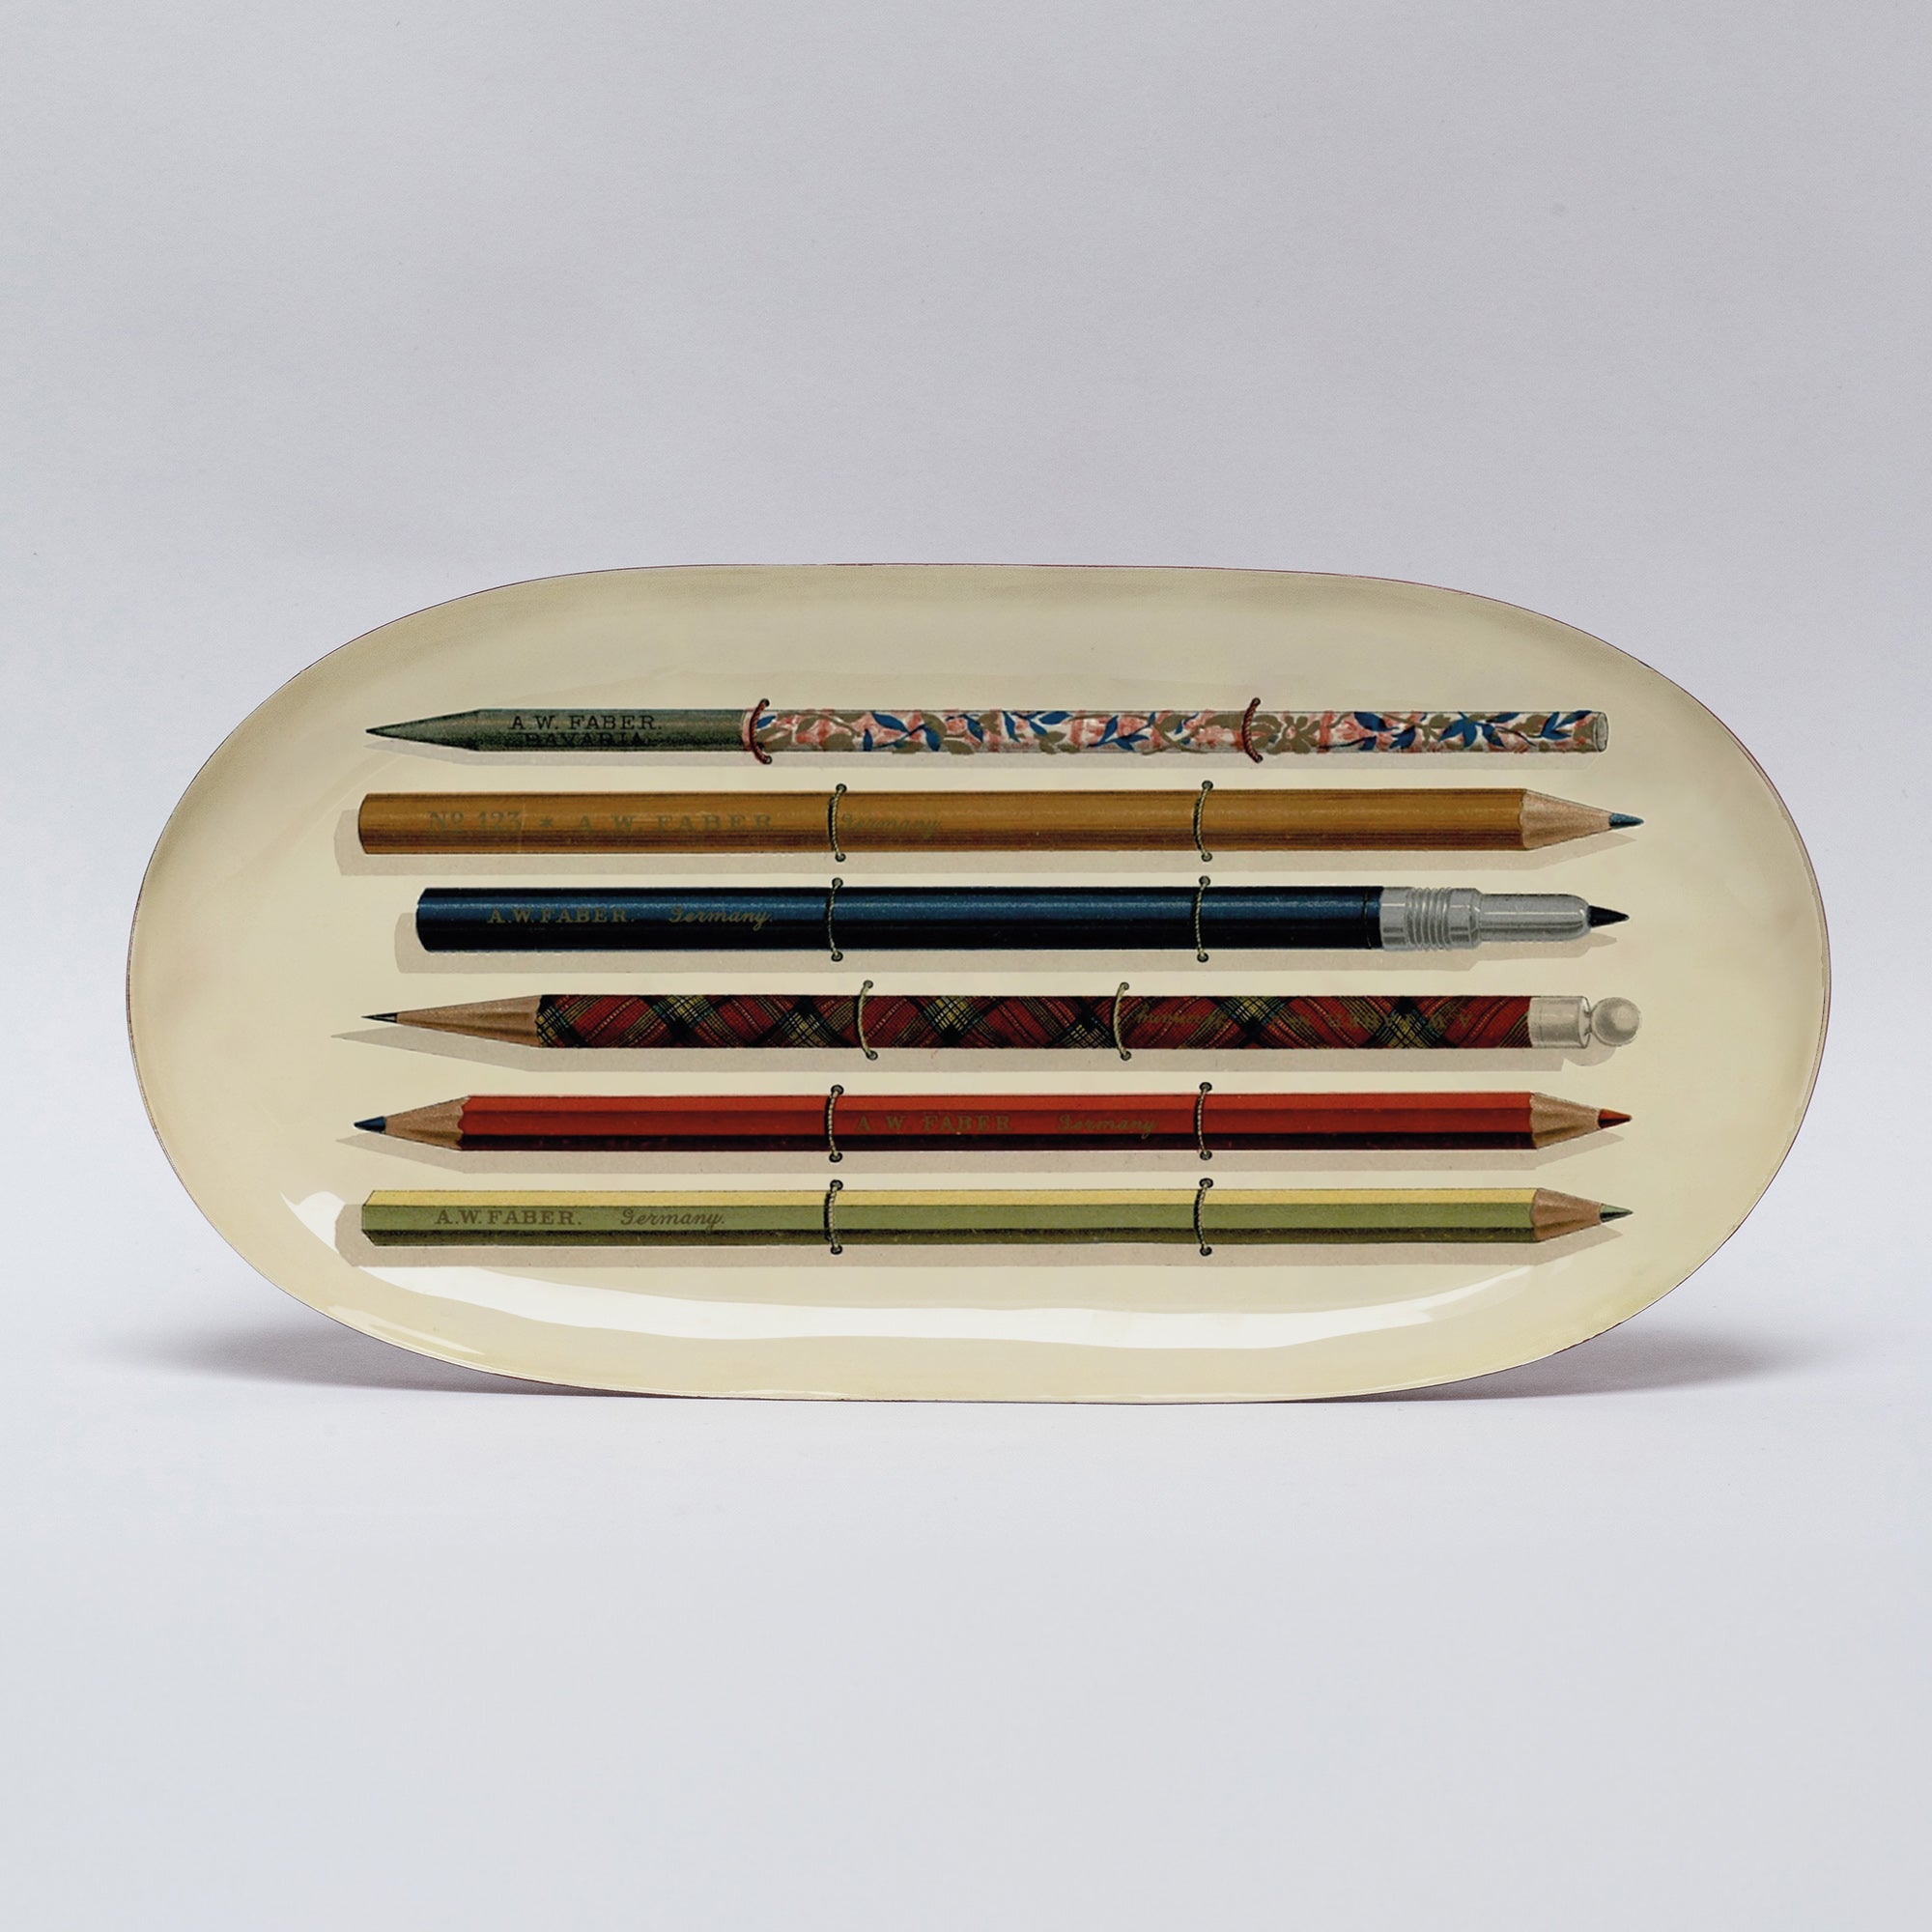 Oval Enamel Tray - Vintage Pencils - Life of Riley